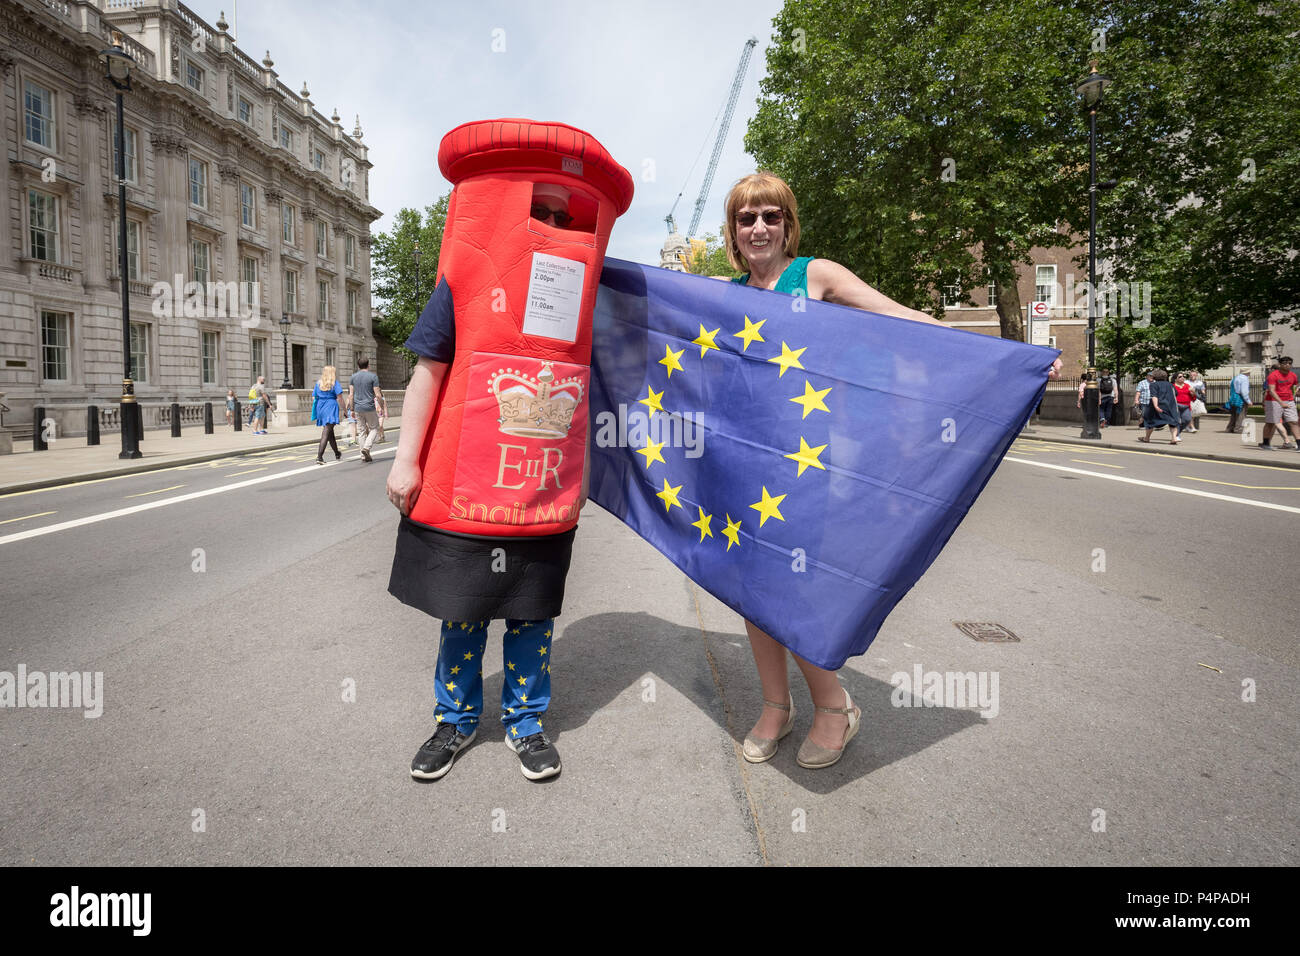 Londres, Reino Unido. 23 de junio de 2018. Anti-Brexit protesta: Más de 100.000 asistir a "Voto Popular" pro-UE de marzo para exigir un referéndum sobre los términos de Brexit dos años después de la votación. Crédito: Guy Corbishley/Alamy Live News Foto de stock